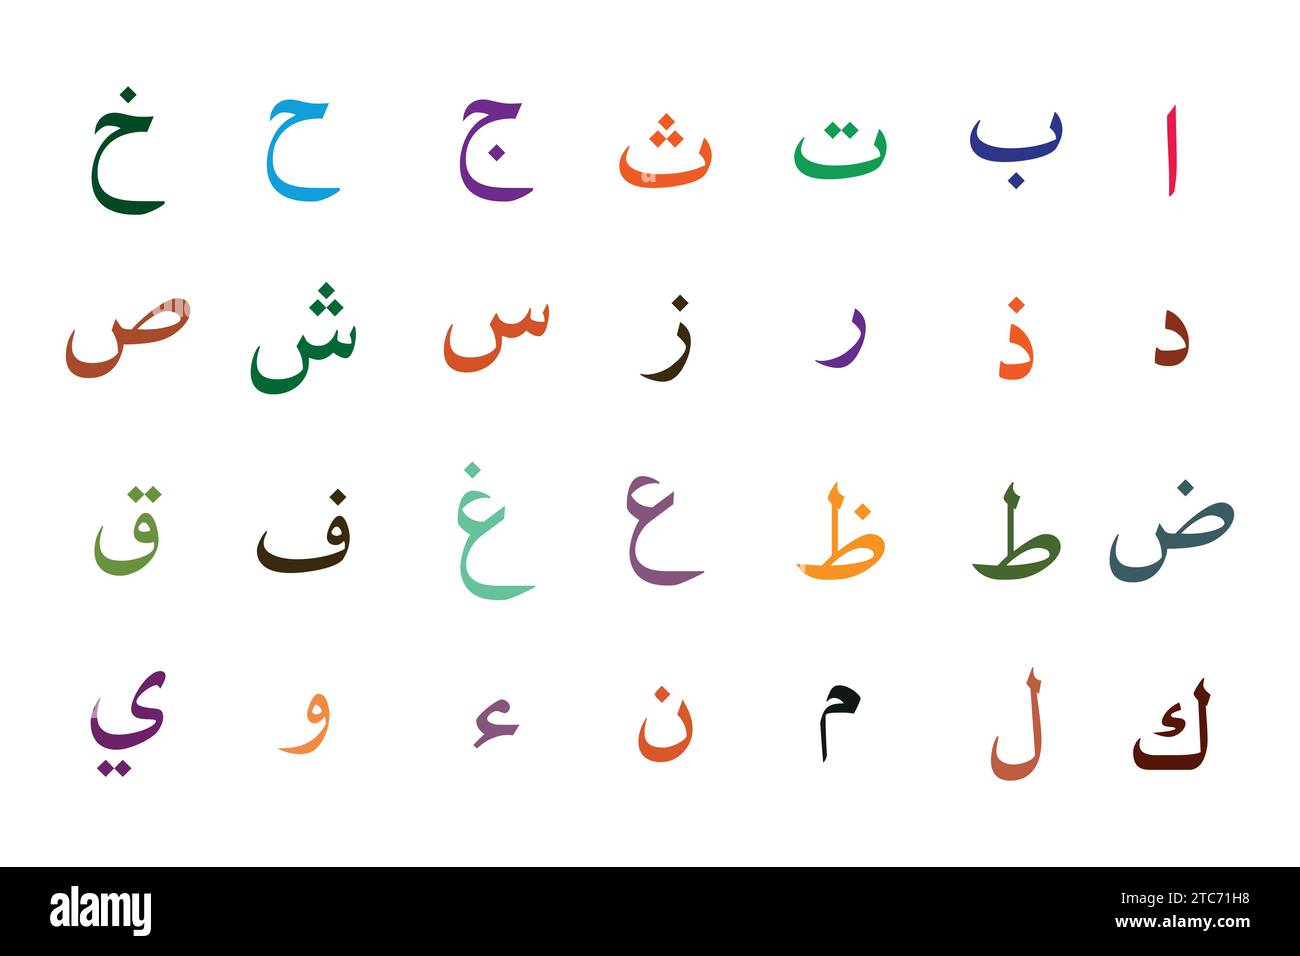 Arabisches Alphabet setzt Vektor auf weißem Hintergrund. Stock Vektor